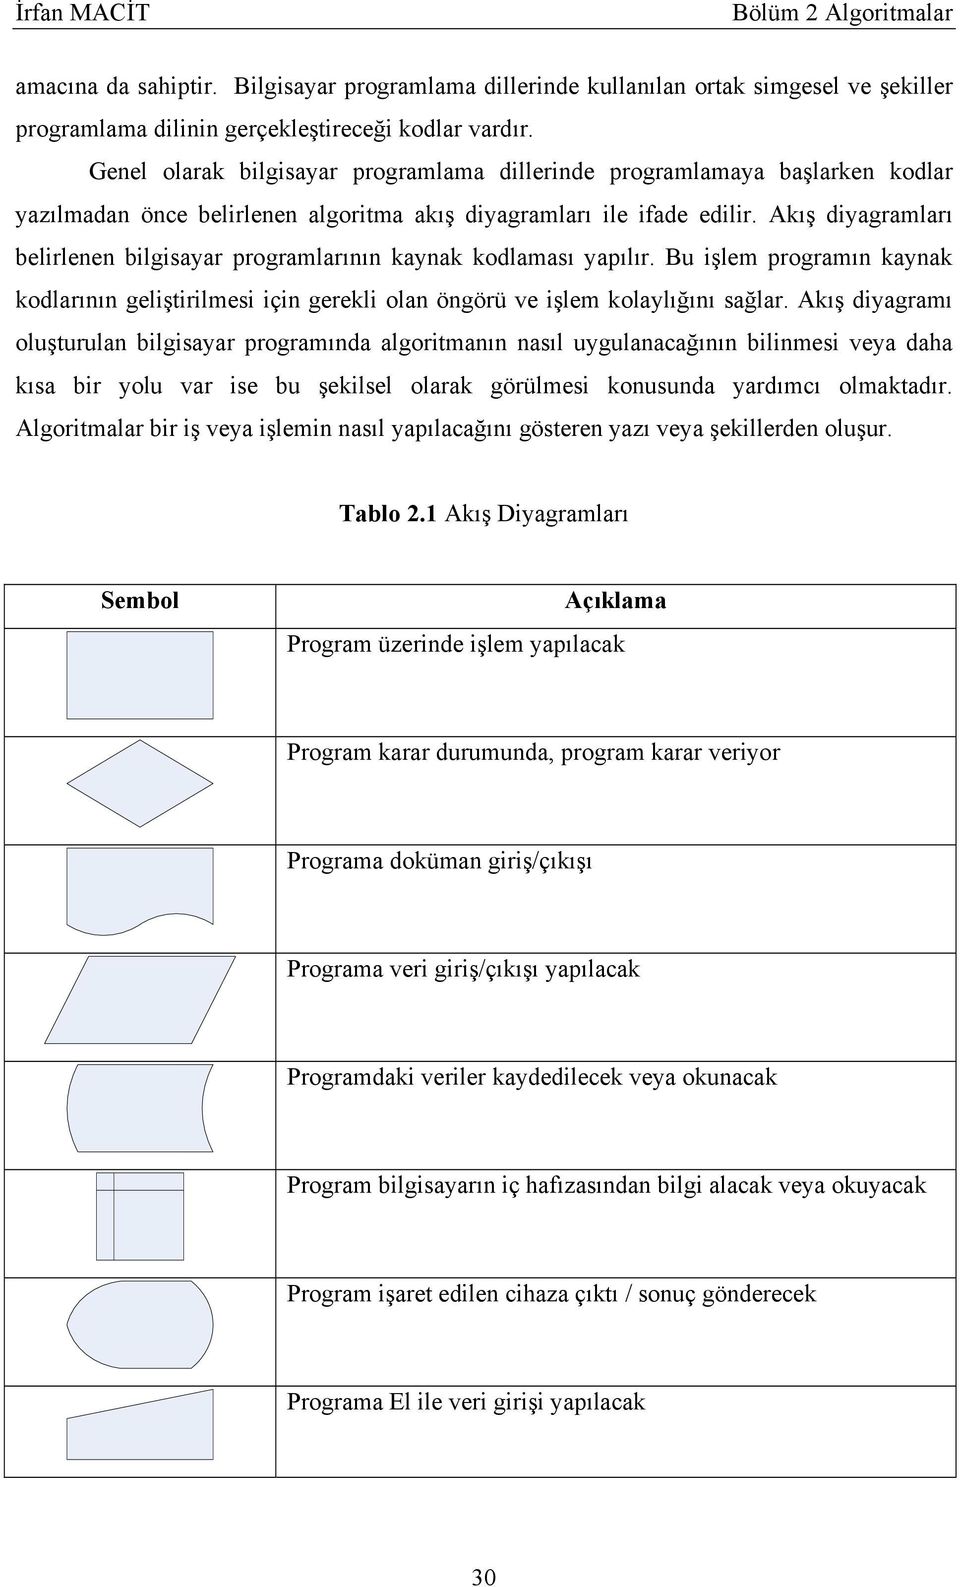 Akış diyagramları belirlenen bilgisayar programlarının kaynak kodlaması yapılır. Bu işlem programın kaynak kodlarının geliştirilmesi için gerekli olan öngörü ve işlem kolaylığını sağlar.